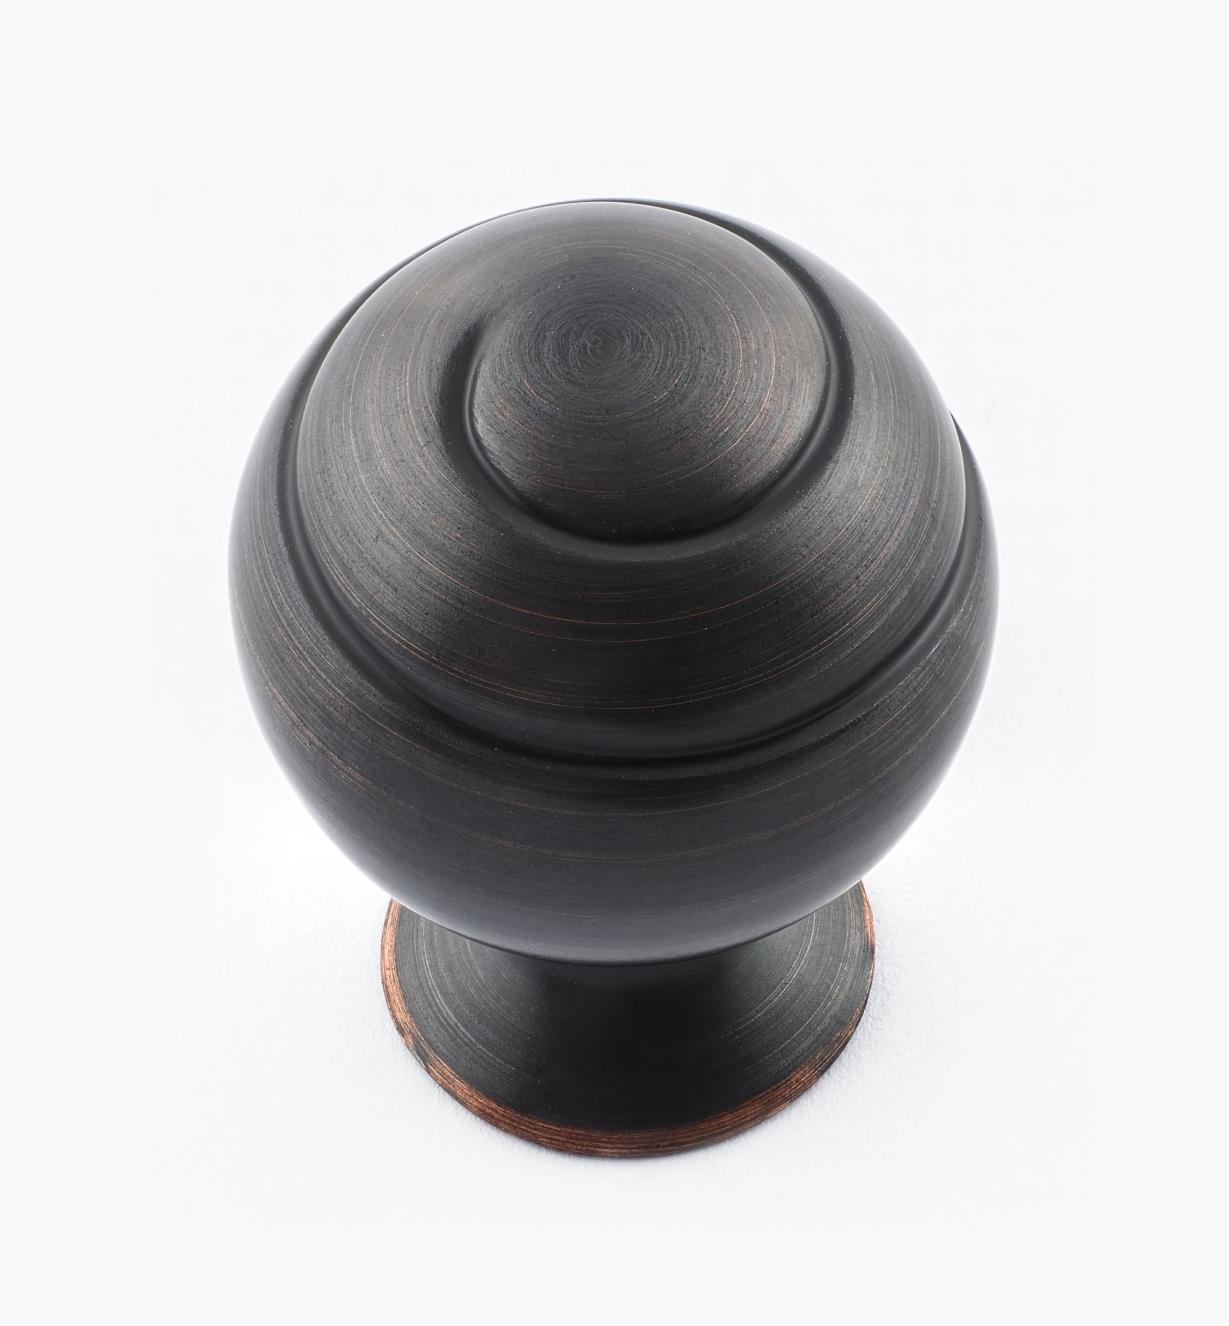 02A1746 - Swirl'z Oil-Rubbed Bronze Ball Knob